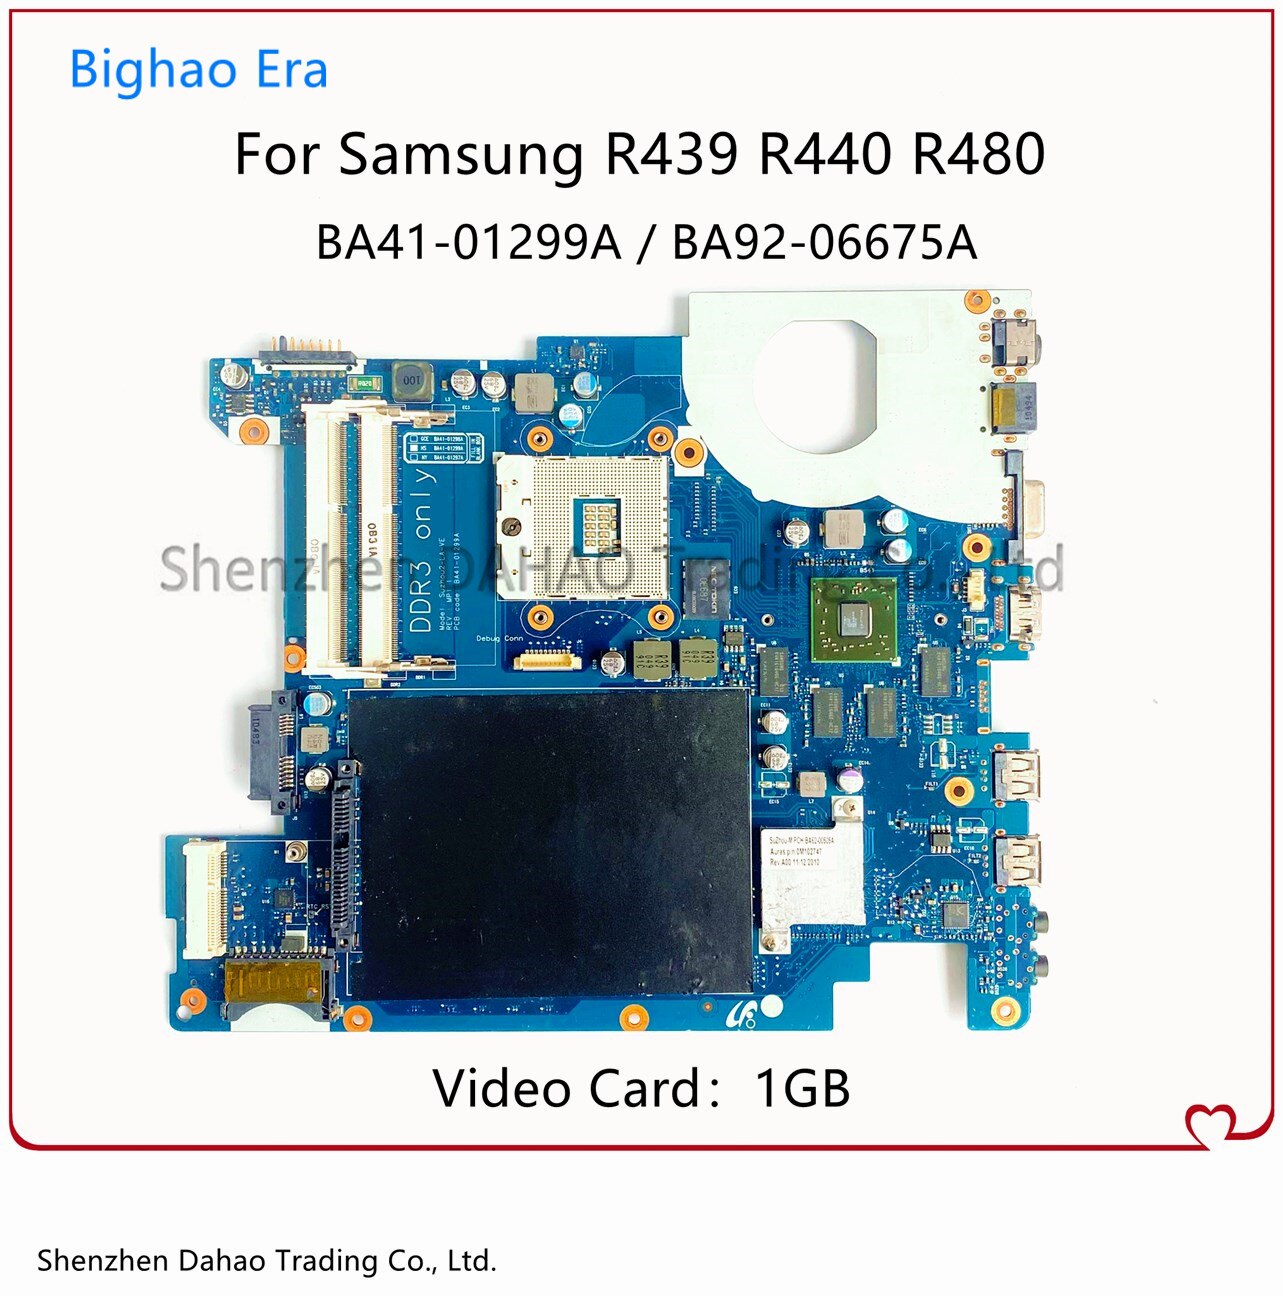 Carte mère avec puce HM55 HD5470M 1GB-GPU, 100% fonctionnelle, pour Samsung R439 R440 R480, pour ordinateur portable BA41-01298A BA41-01299A BA92-06675B